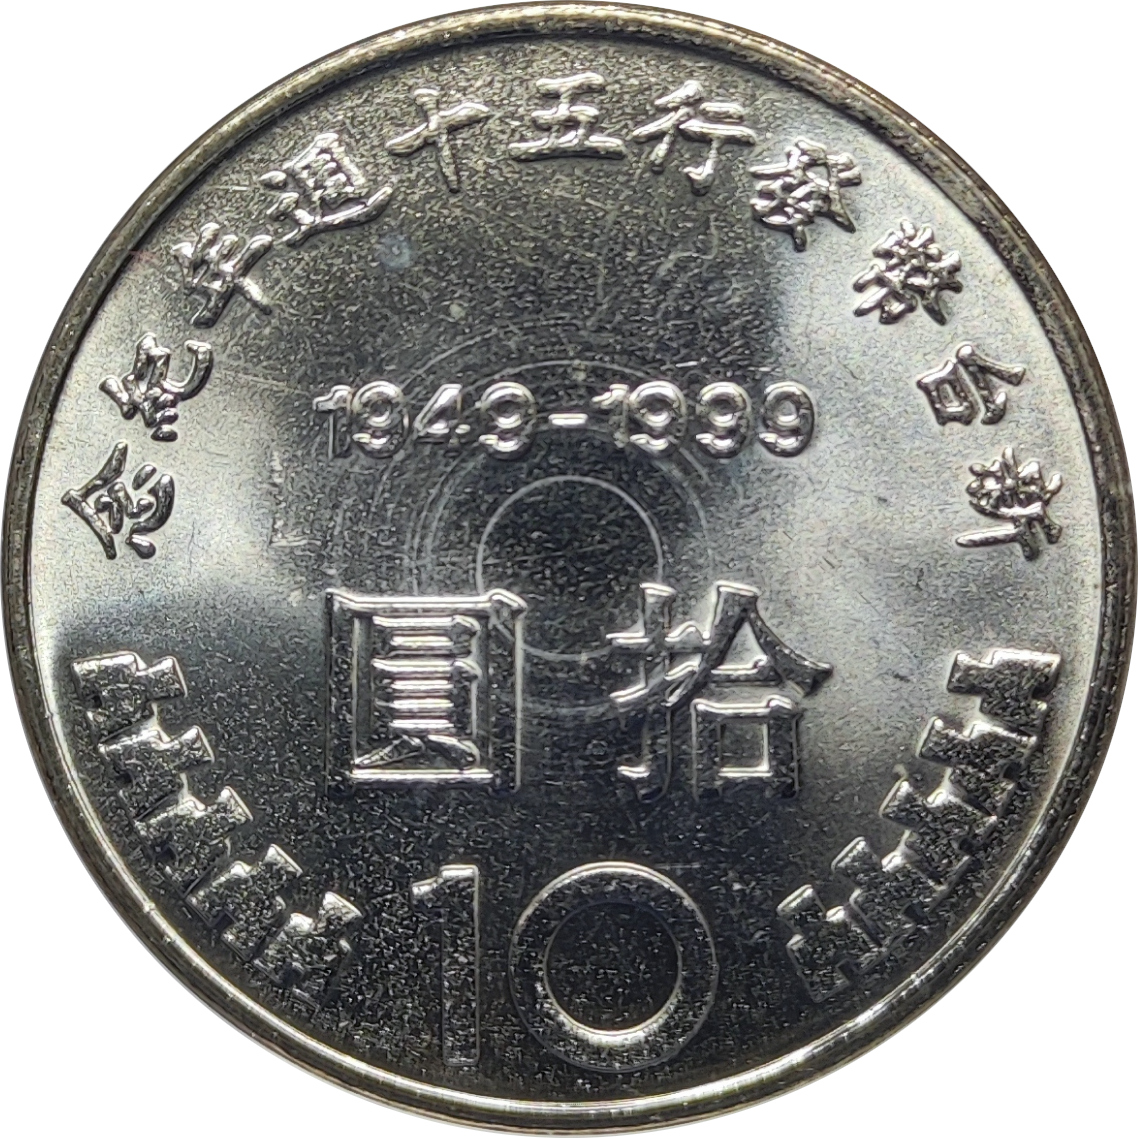 10 yuan - Dollar taiwanais - 50 years